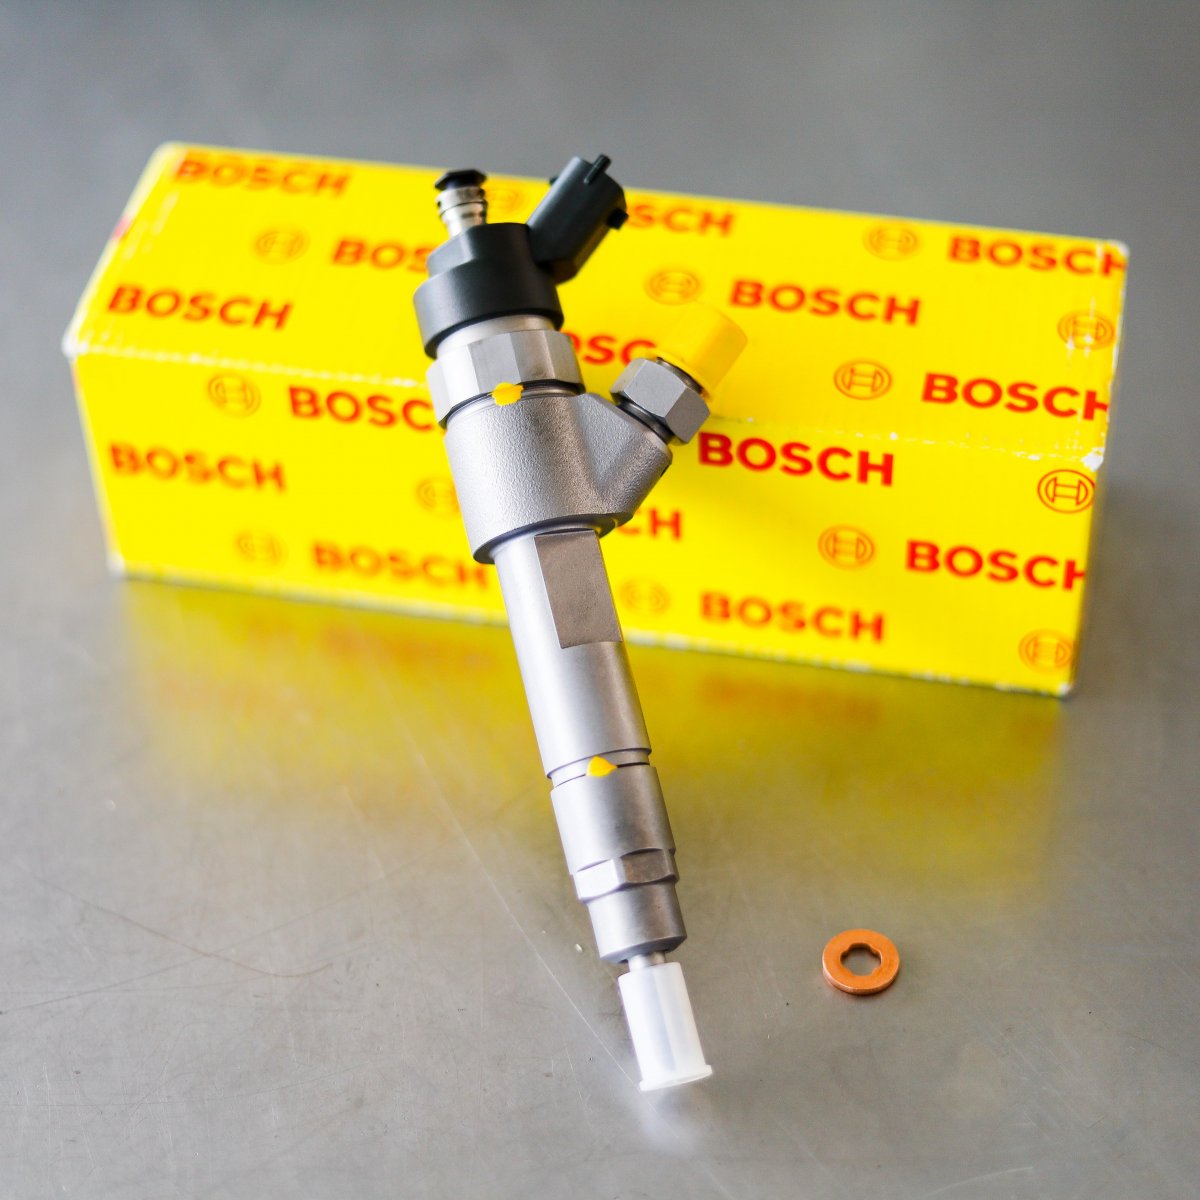 Wtryskiwacz Bosch po naprawie gotowy do nadania do serwisu na gwarancji na okres 2 lat w dobrej cenie